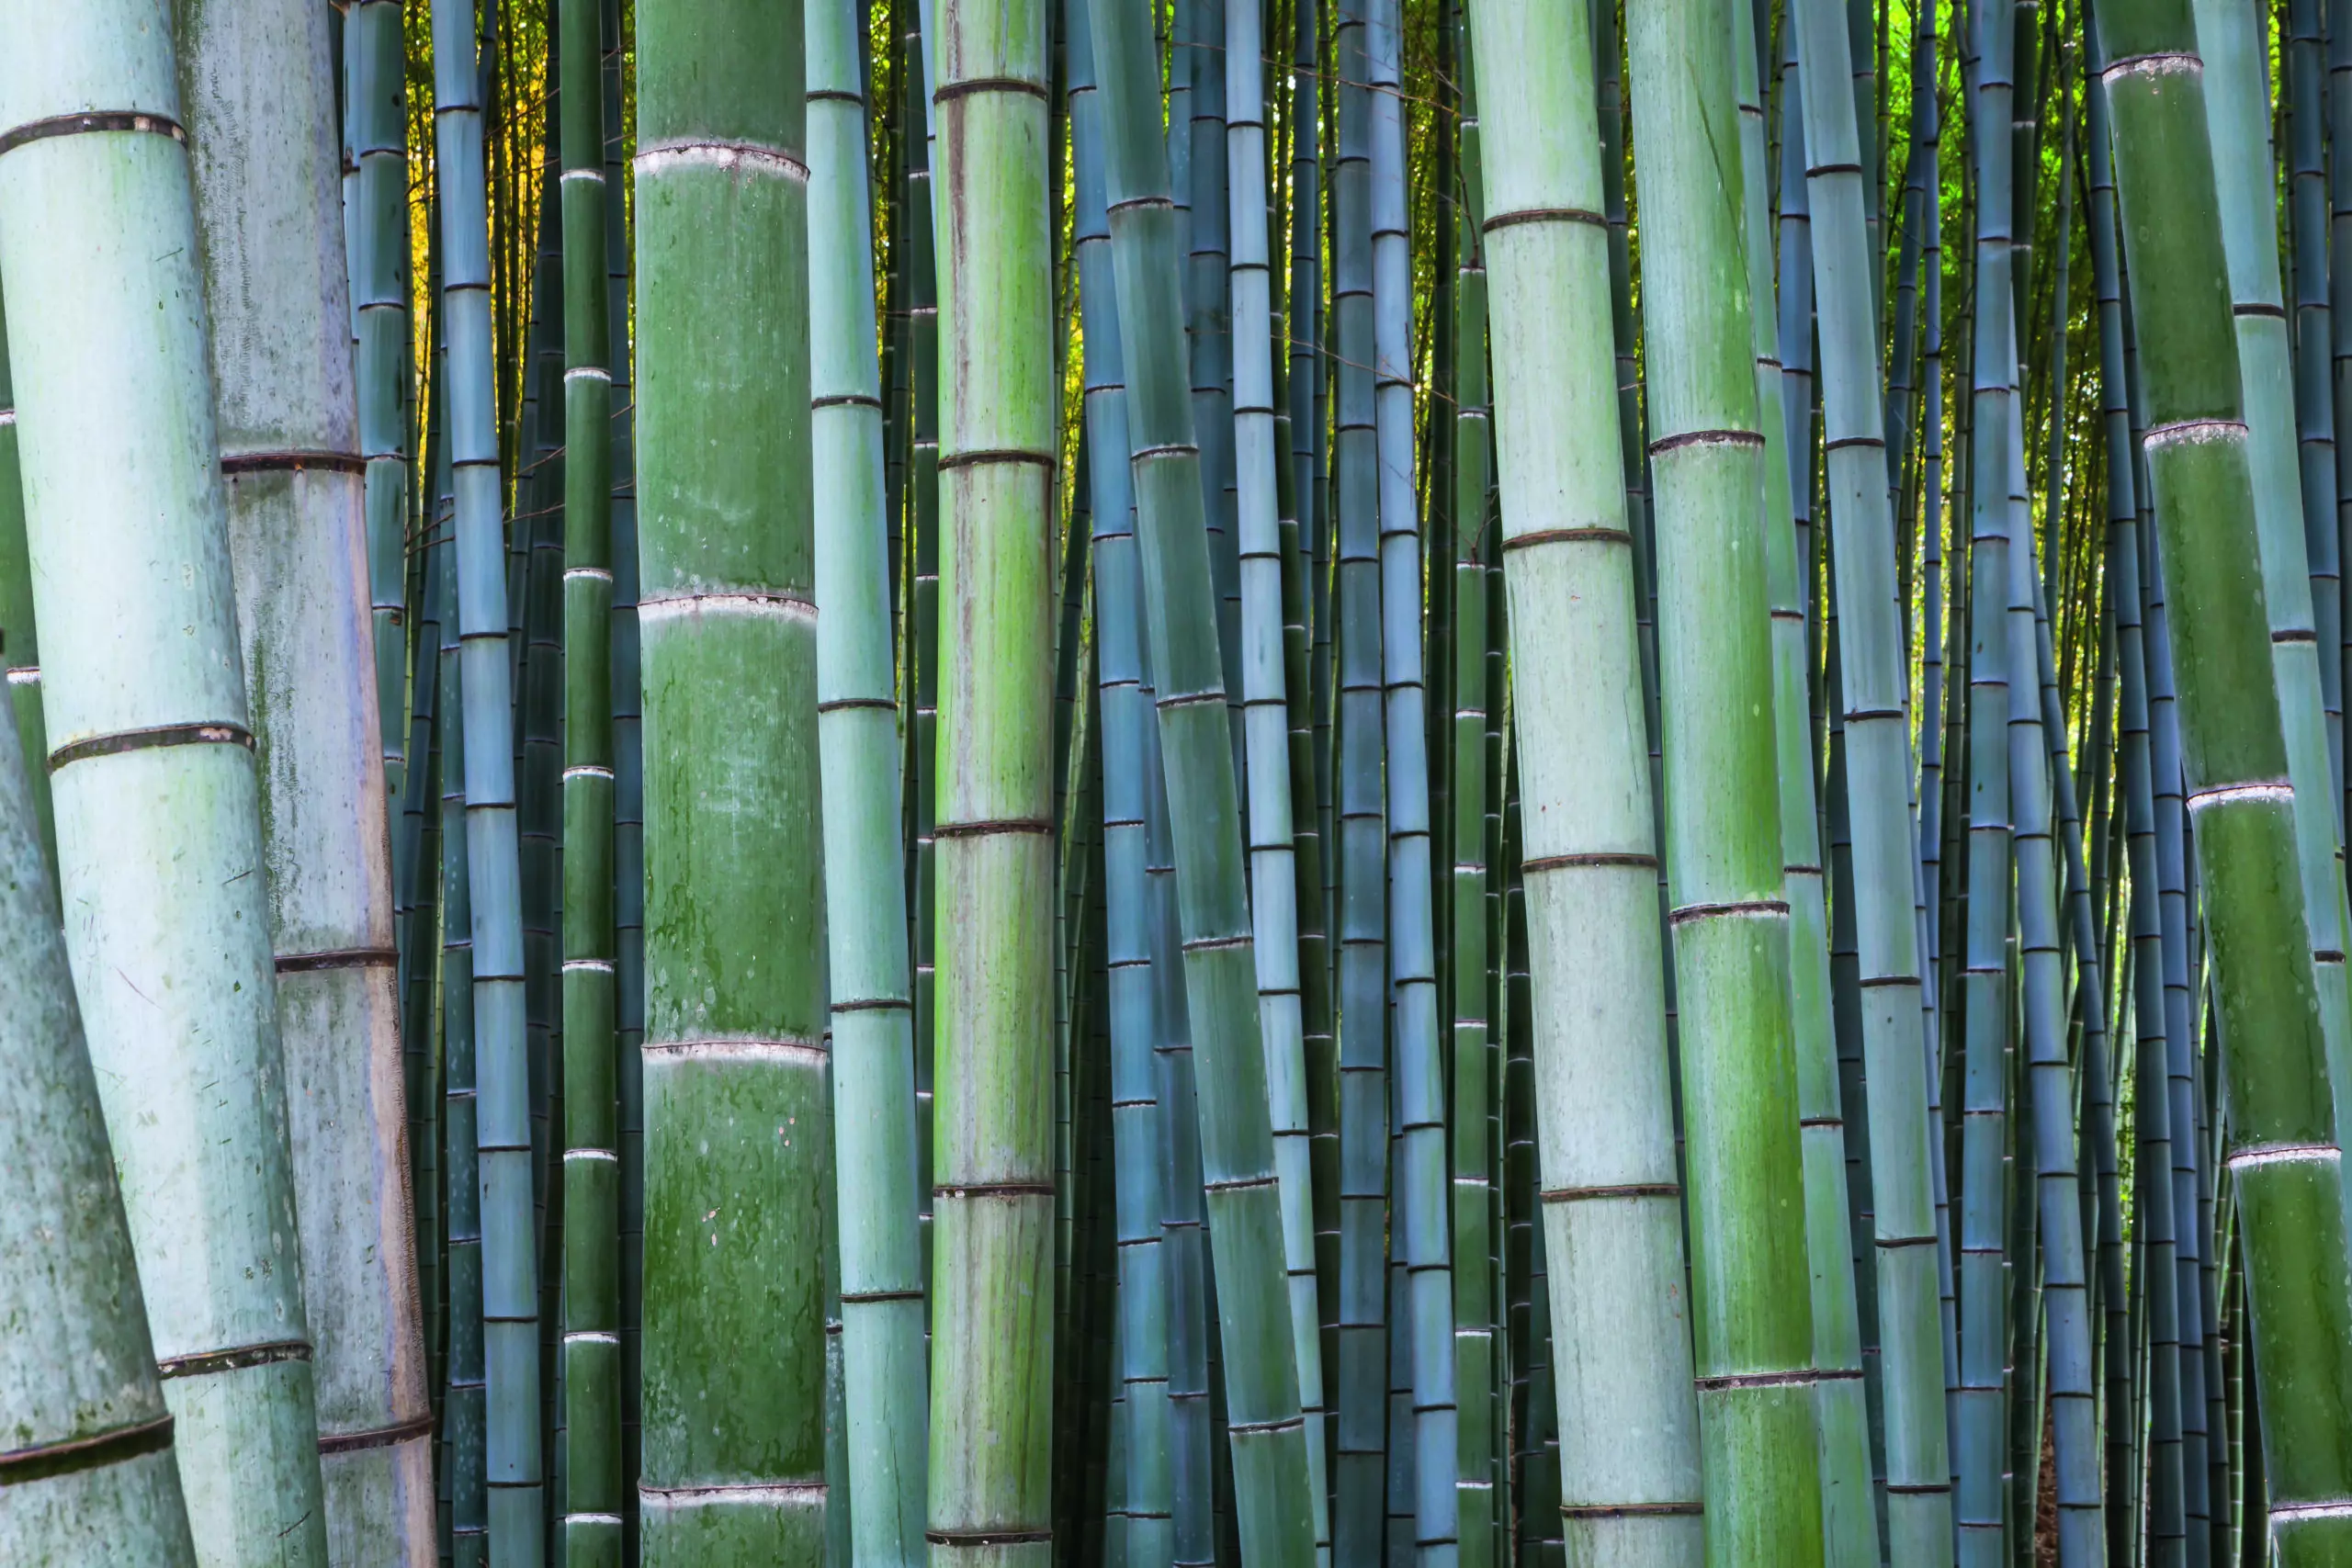 Wandbild (5295) Bamboo forest by Tim Draper, HUBER IMAGES präsentiert: Details und Strukturen,Natur,Landschaften,Makro,Sonstige Pflanzen,Wälder,Asien,Detailaufnahmen,Sonstige Naturdetails,Pflanzen